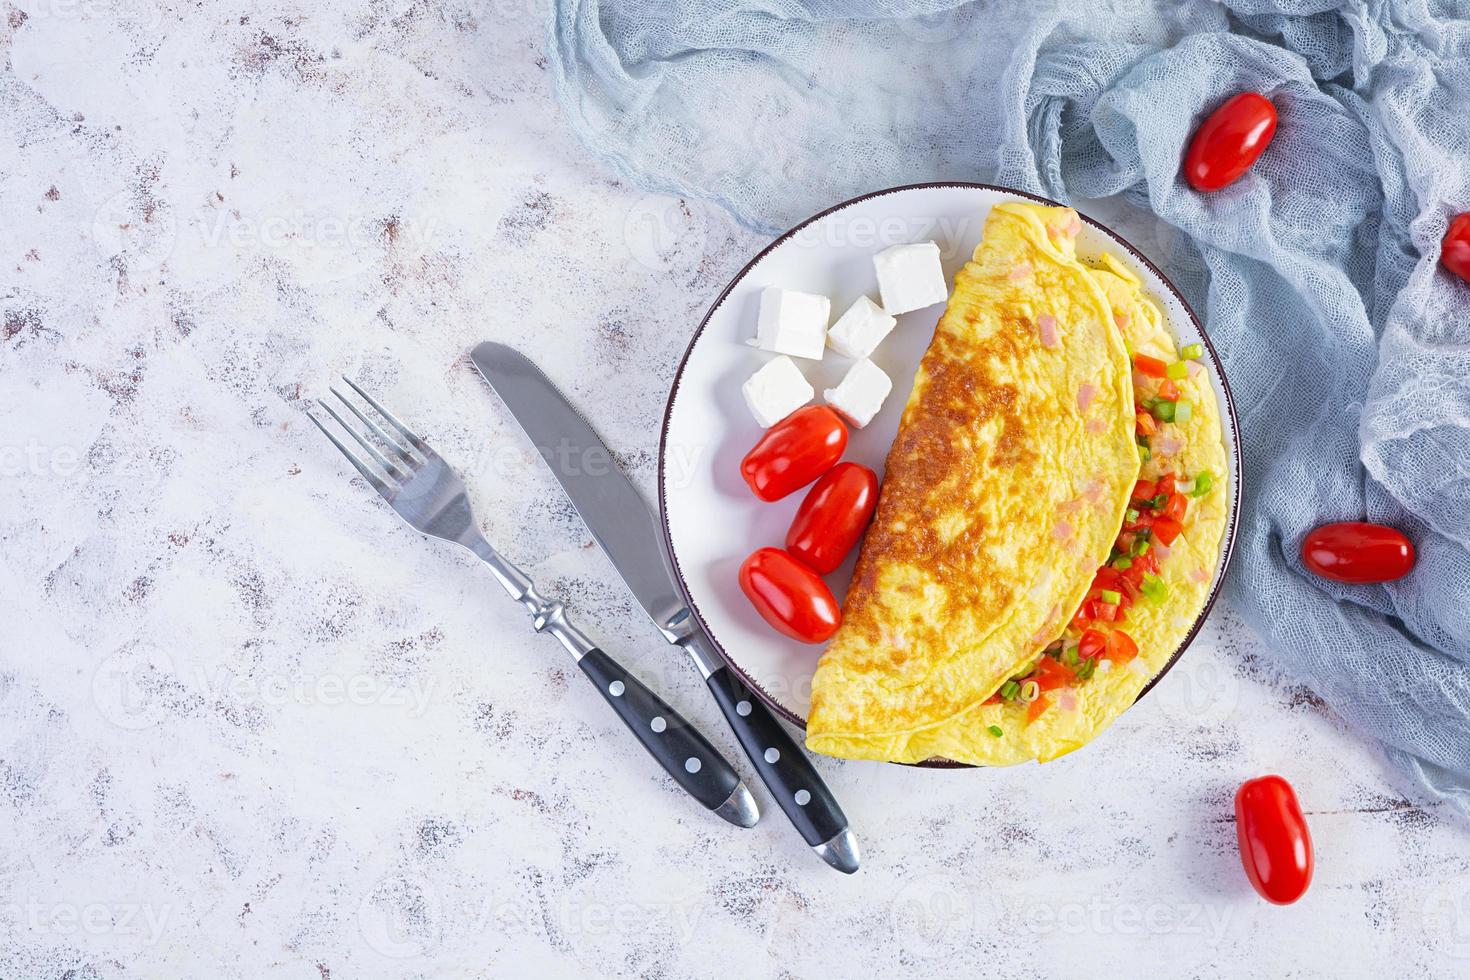 gebakken omelet met rundvlees, tomaat, ui en kruiden. heerlijk ontbijt met door elkaar gegooid eieren. top visie foto